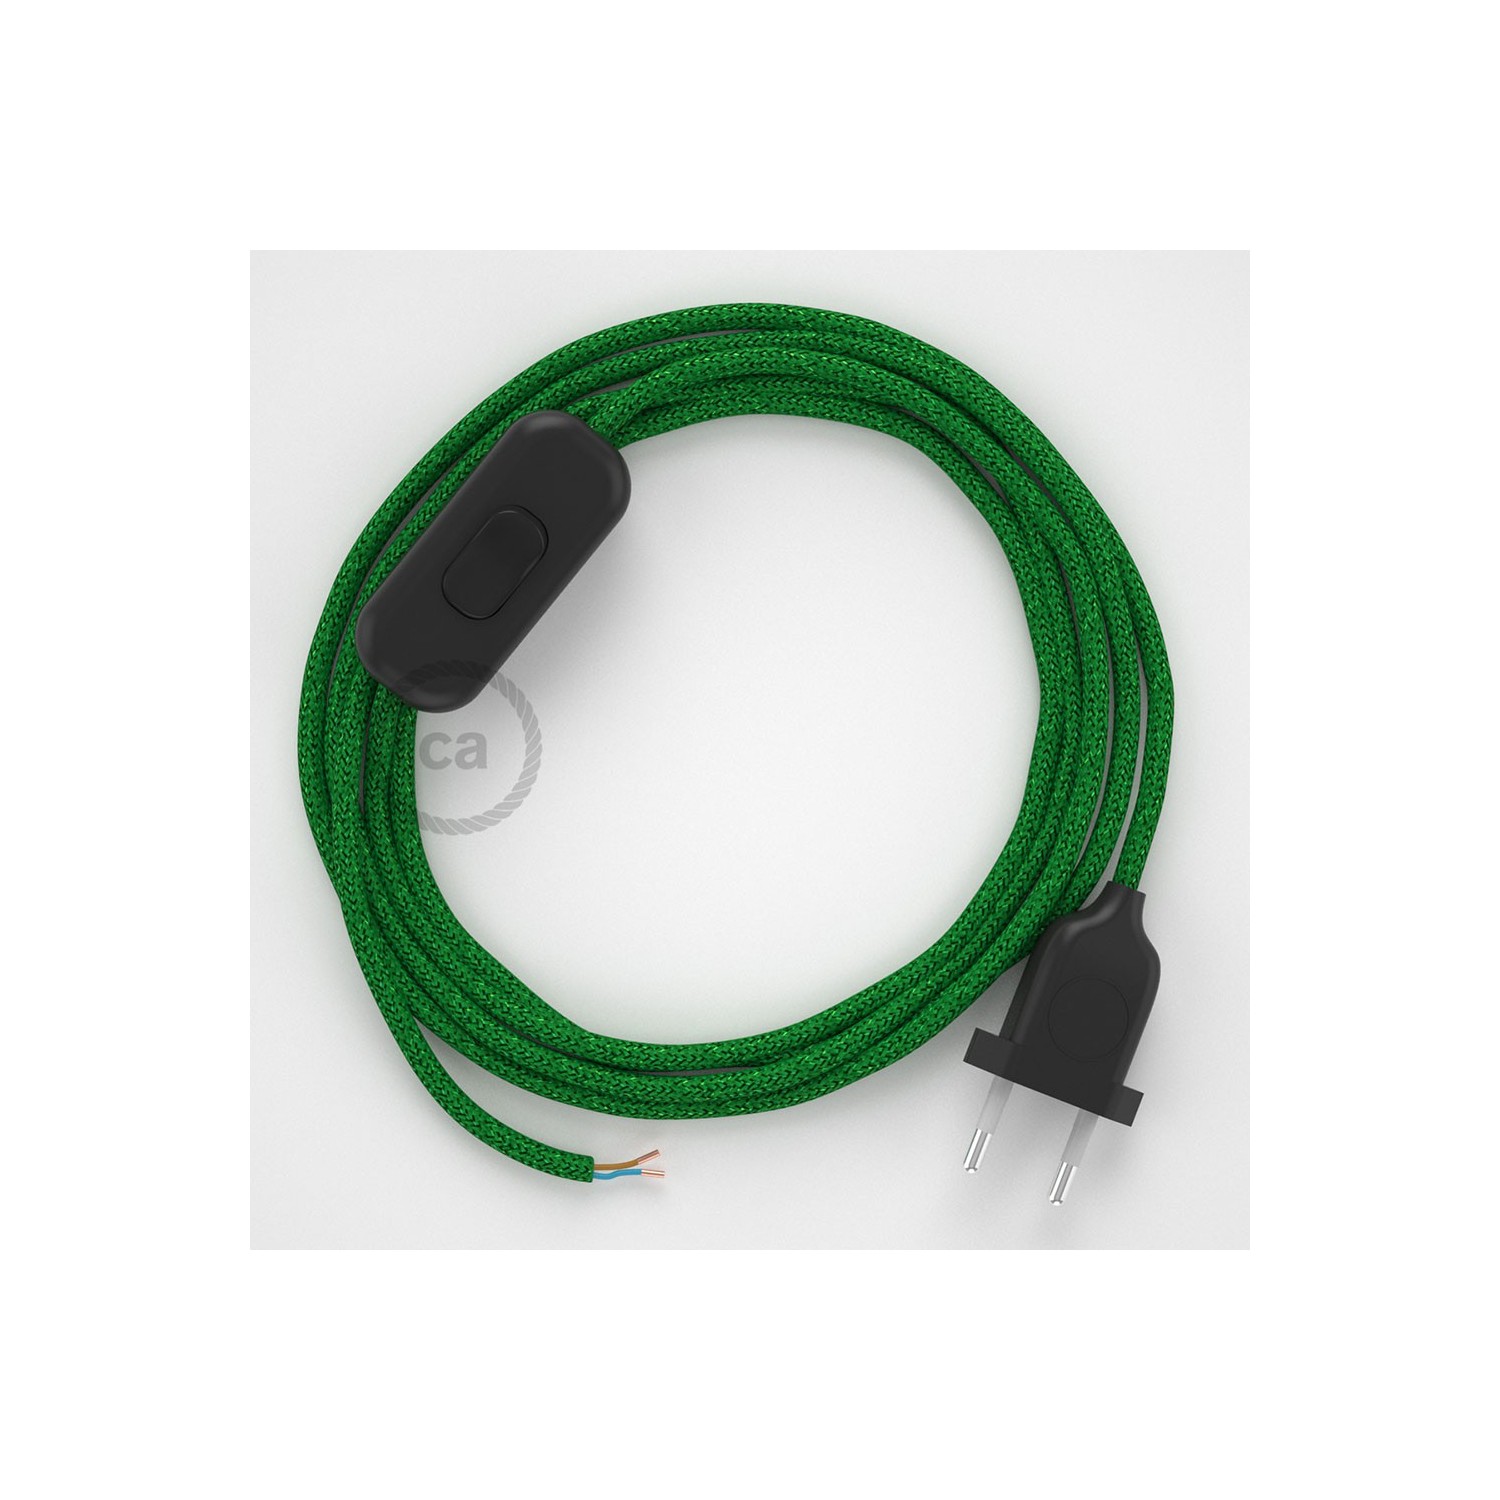 Sladdställ, RL06 Grön Viskos 1,80 m. Välj färg på strömbrytare och kontakt